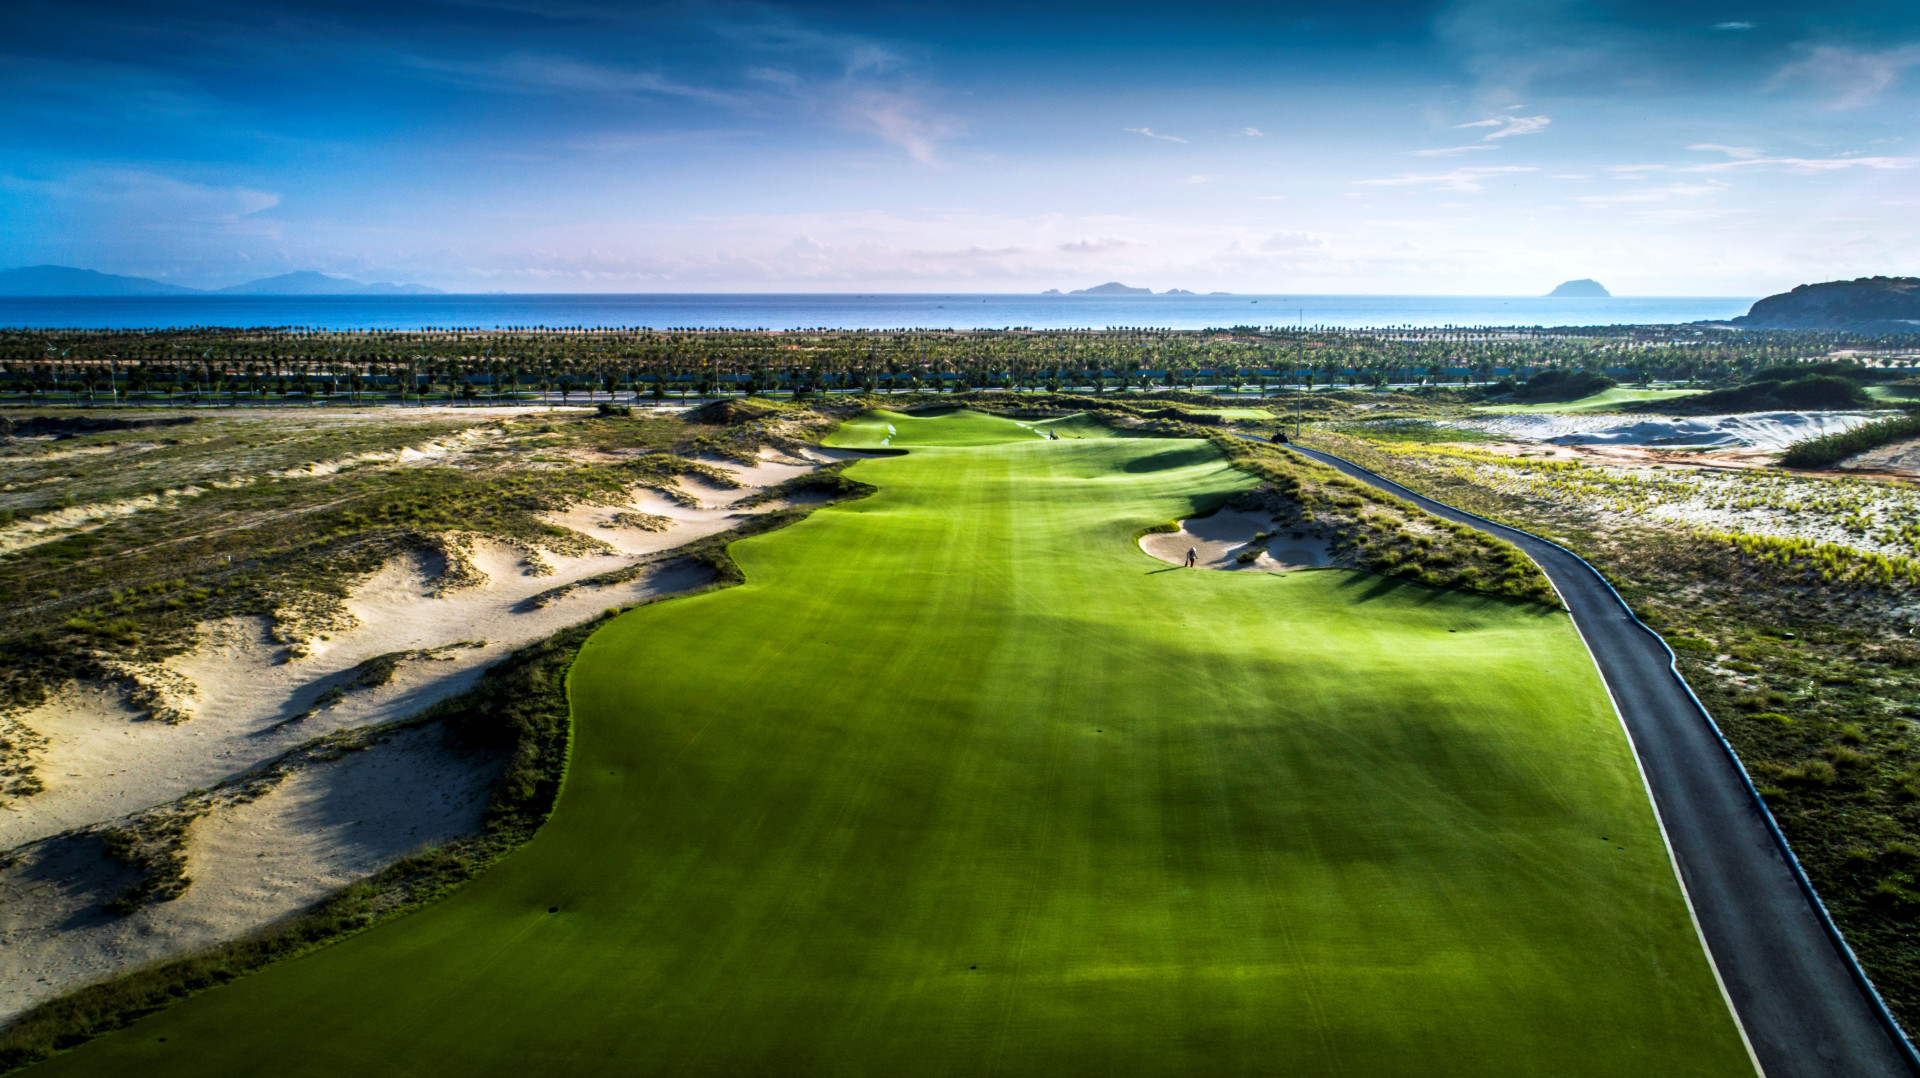 Sân golf 27 lỗ tiêu chuẩn quốc tế, mang đến cho những người đam mê golf những trải nghiệm đẳng cấp.